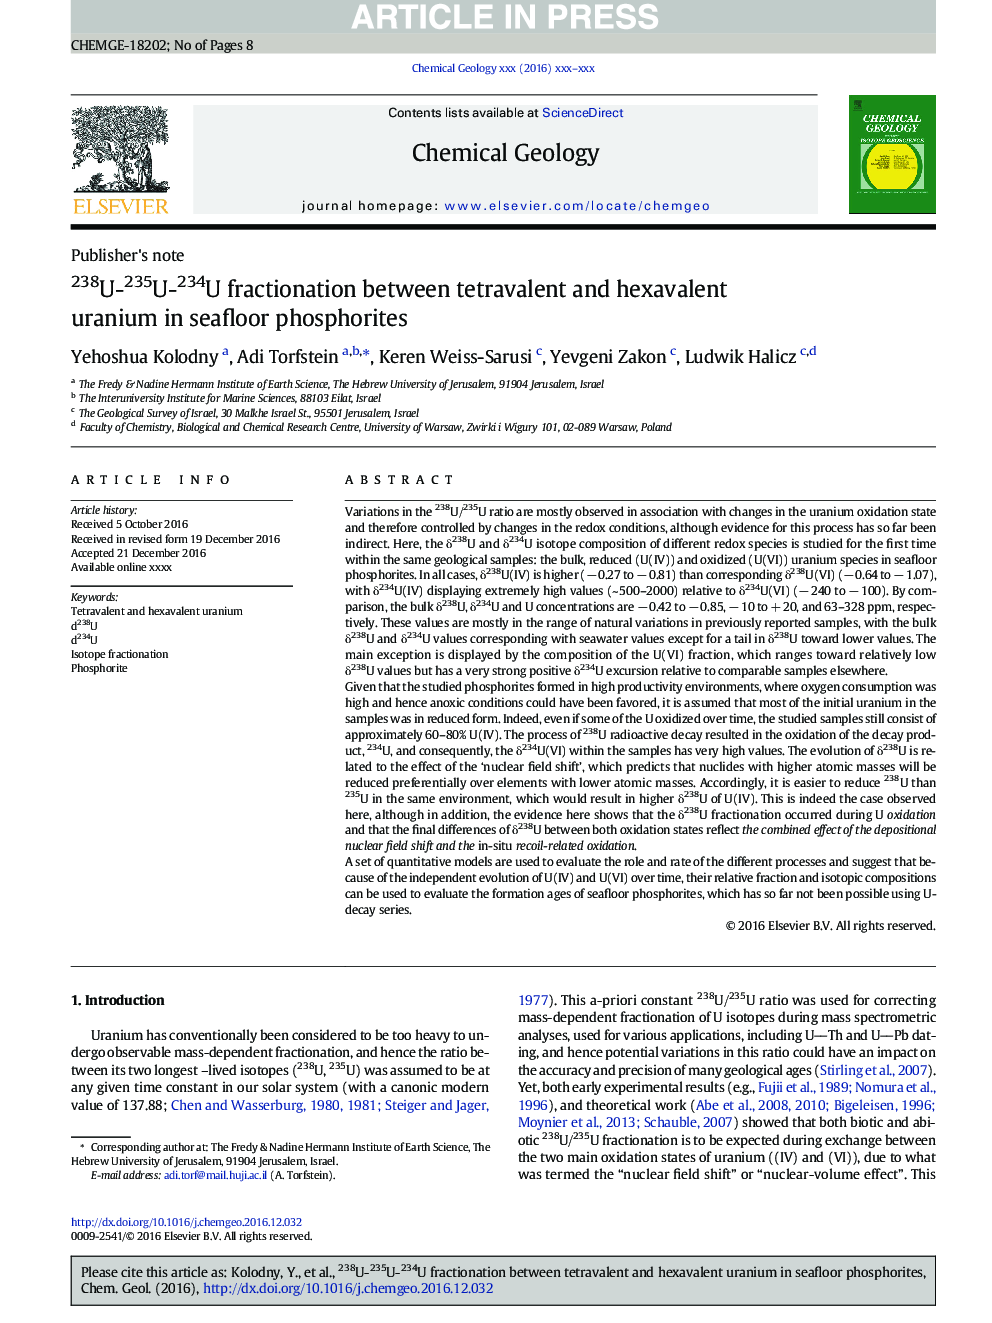 238U-235U-234U fractionation between tetravalent and hexavalent uranium in seafloor phosphorites